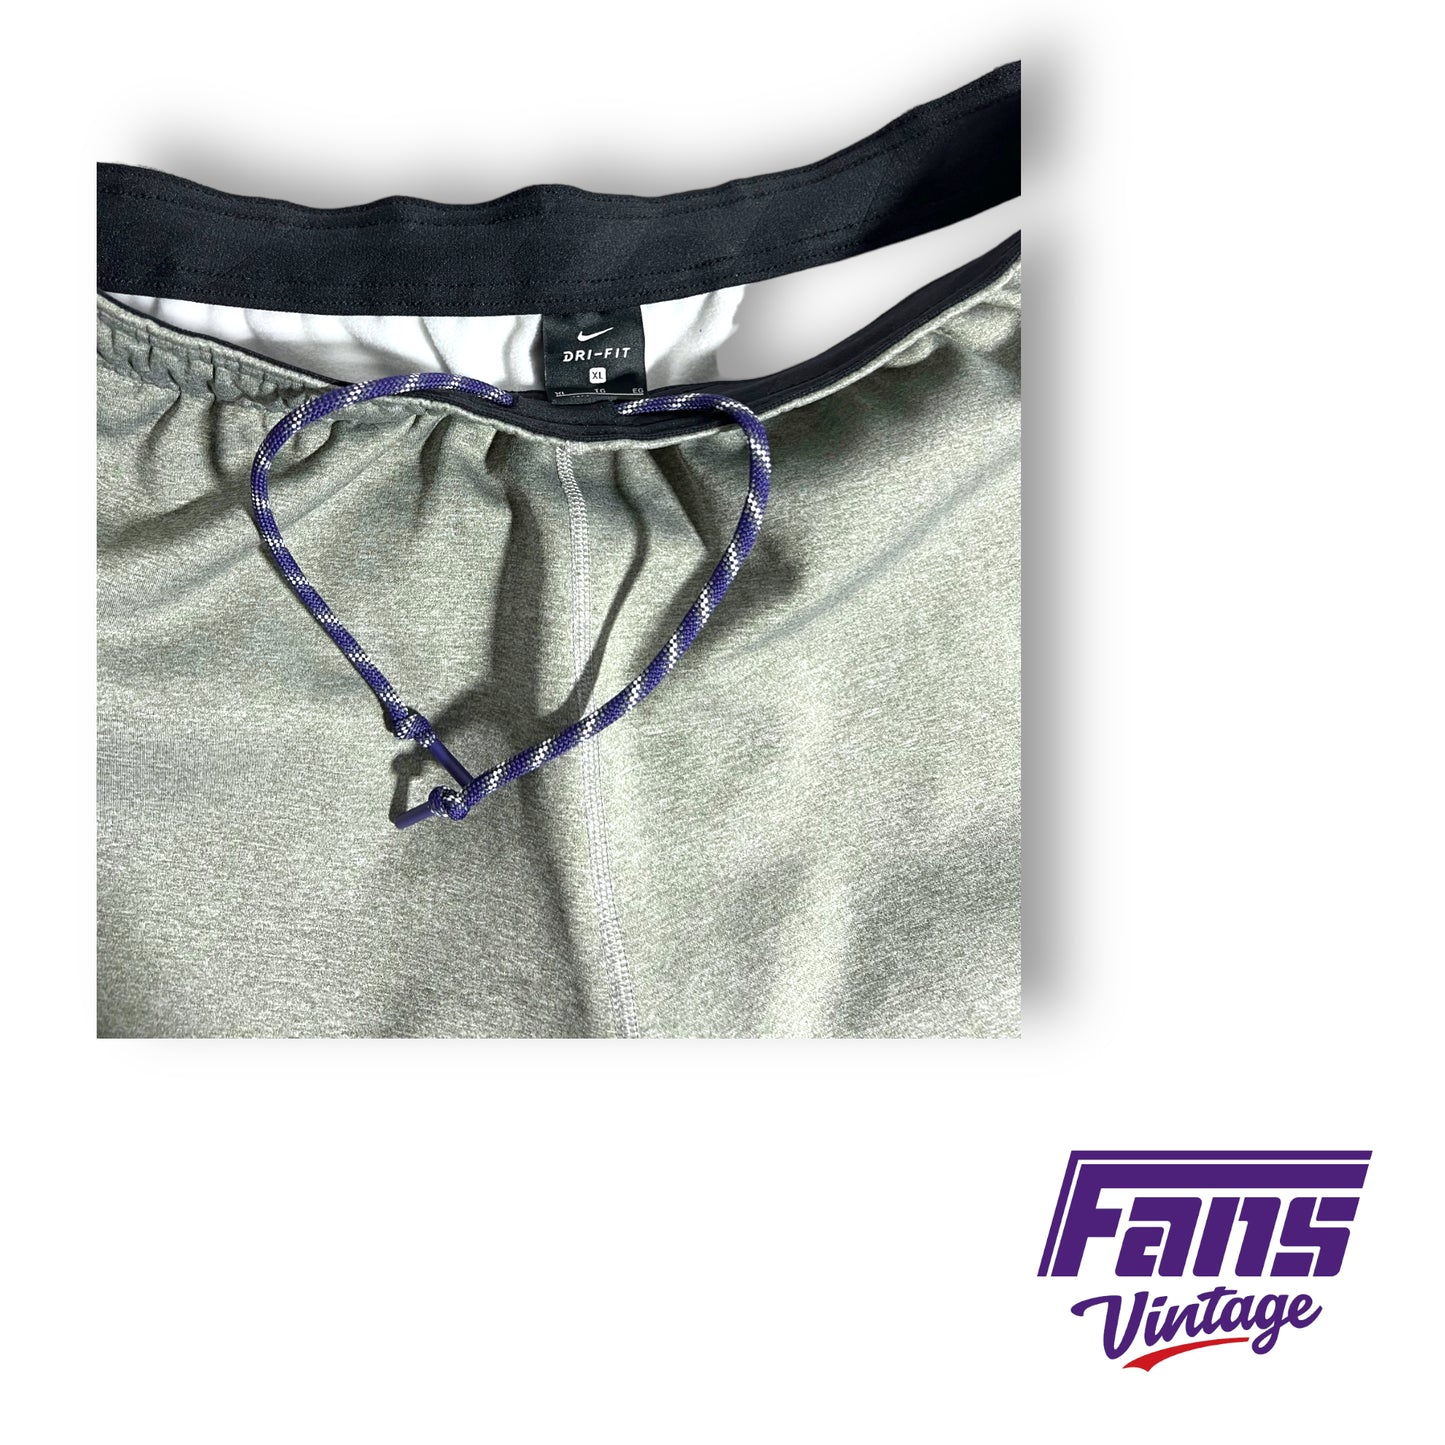 Nike TCU team issued cutoff shorts